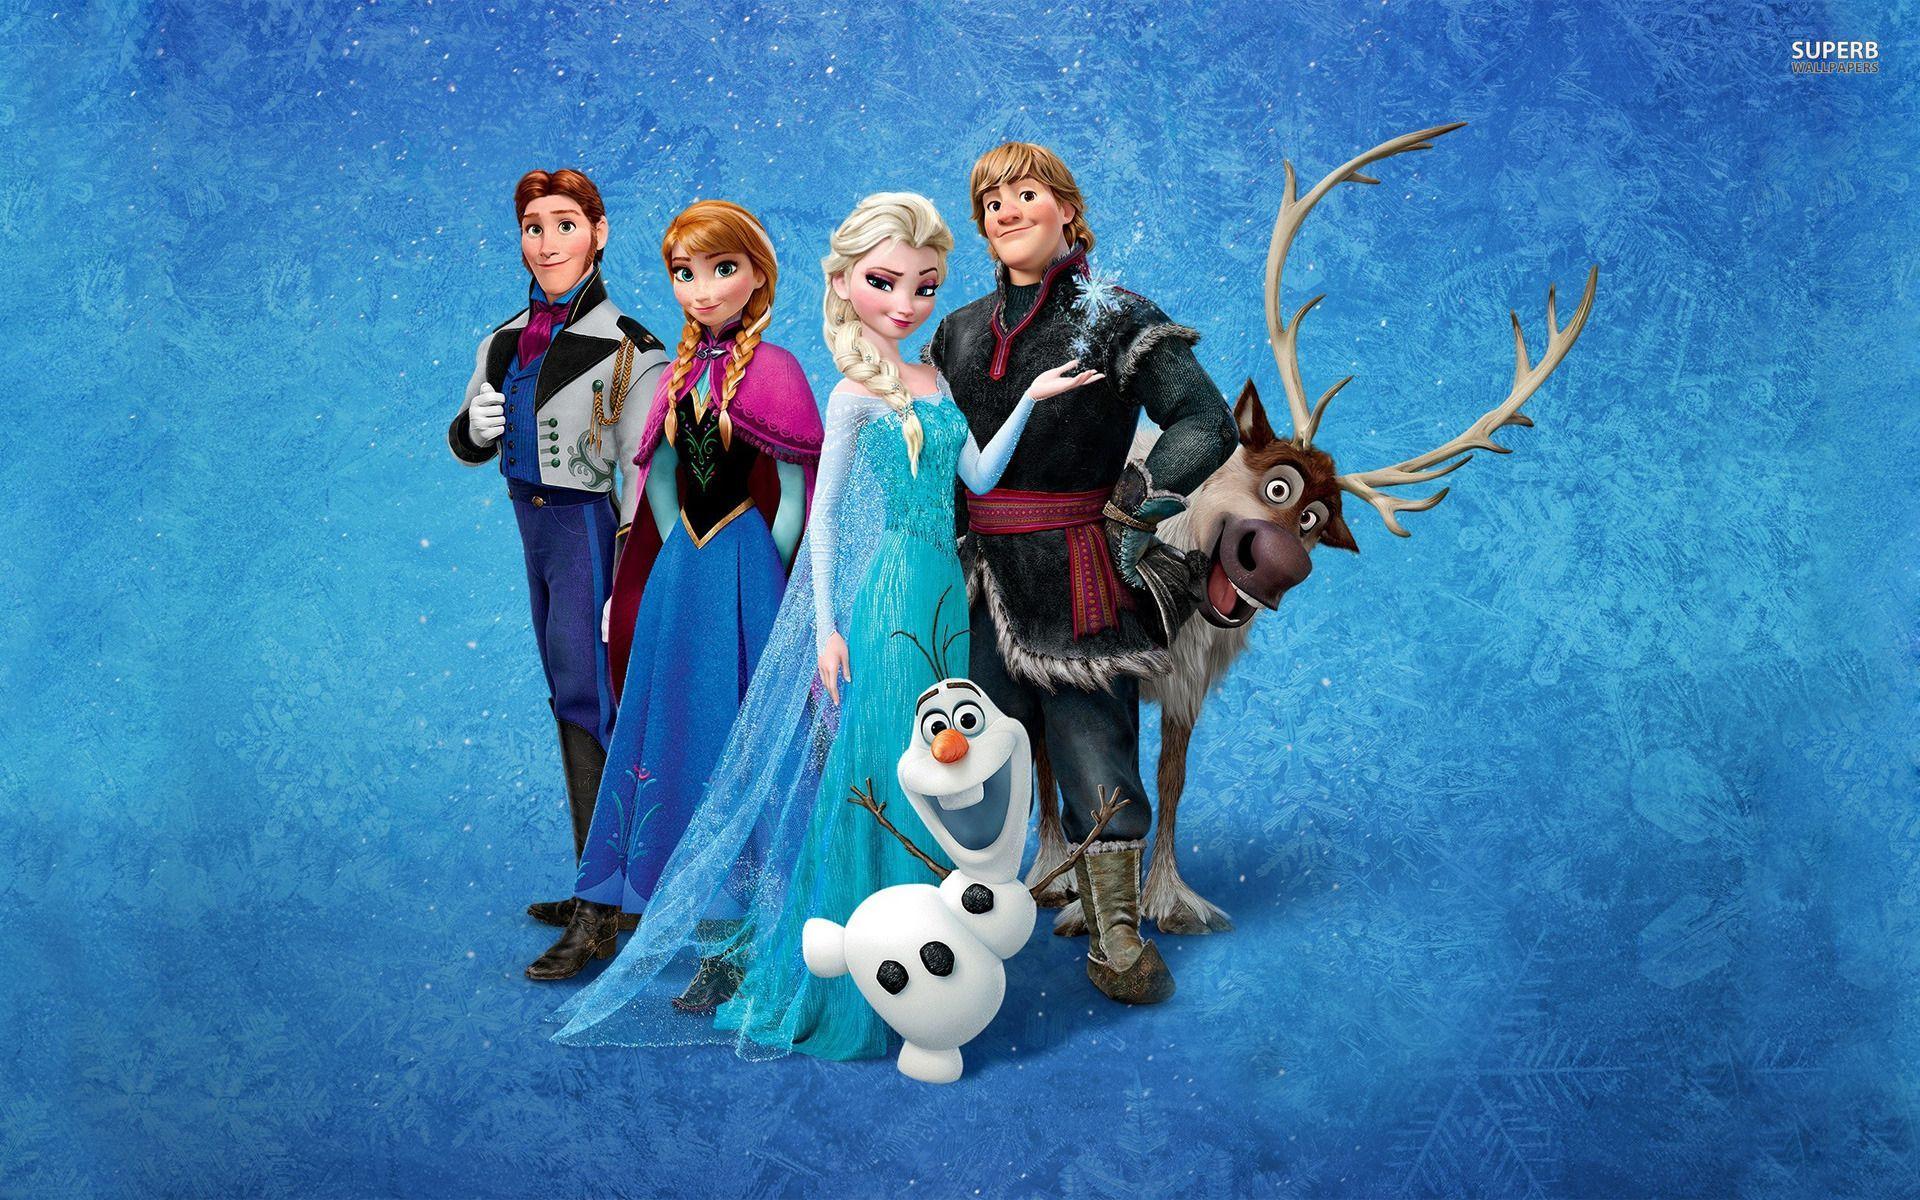 Disney's Frozen. Frozen film